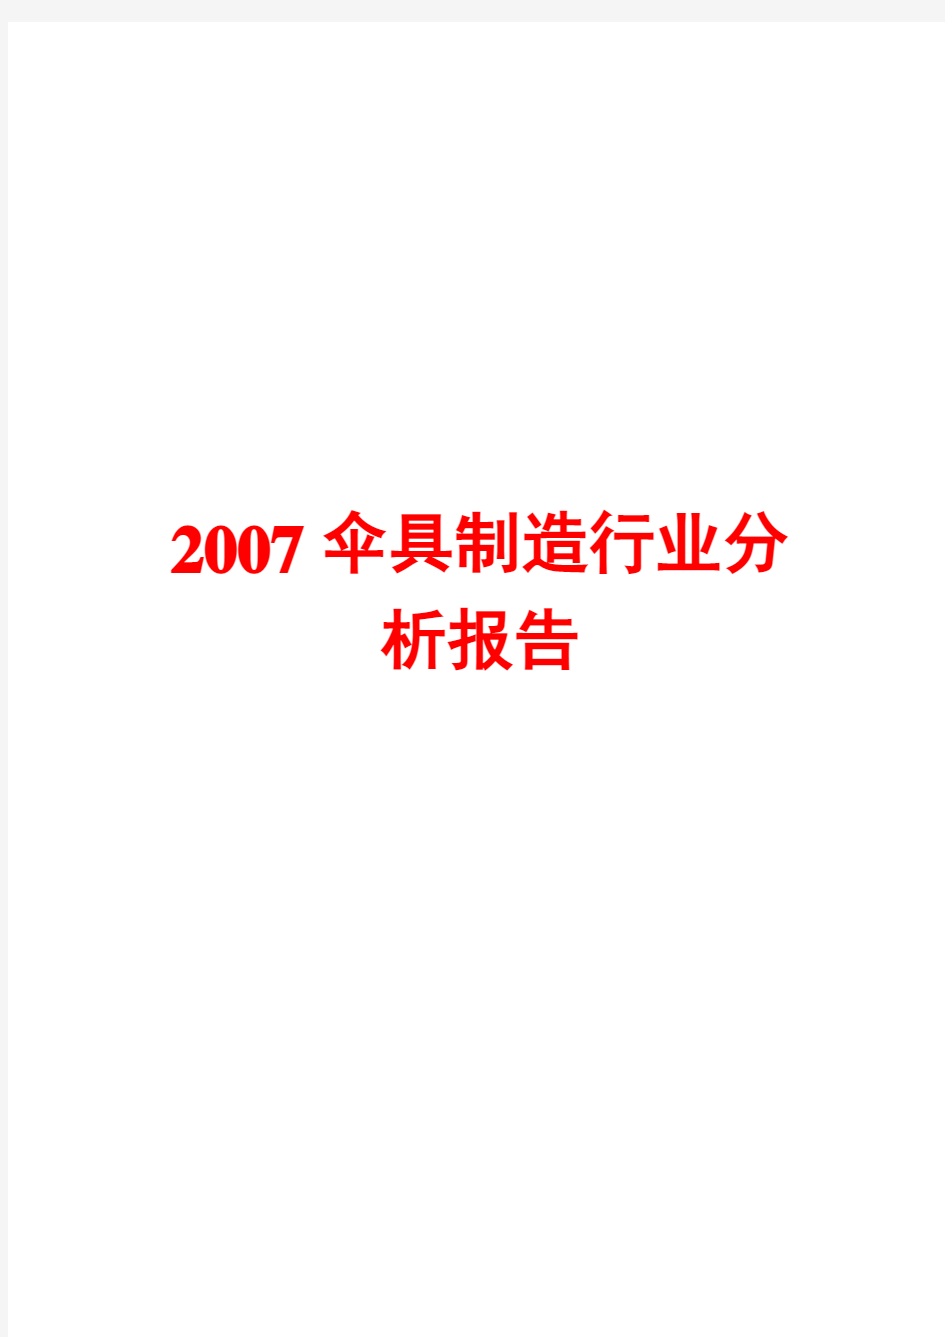 2007年伞具制造行业分析报告